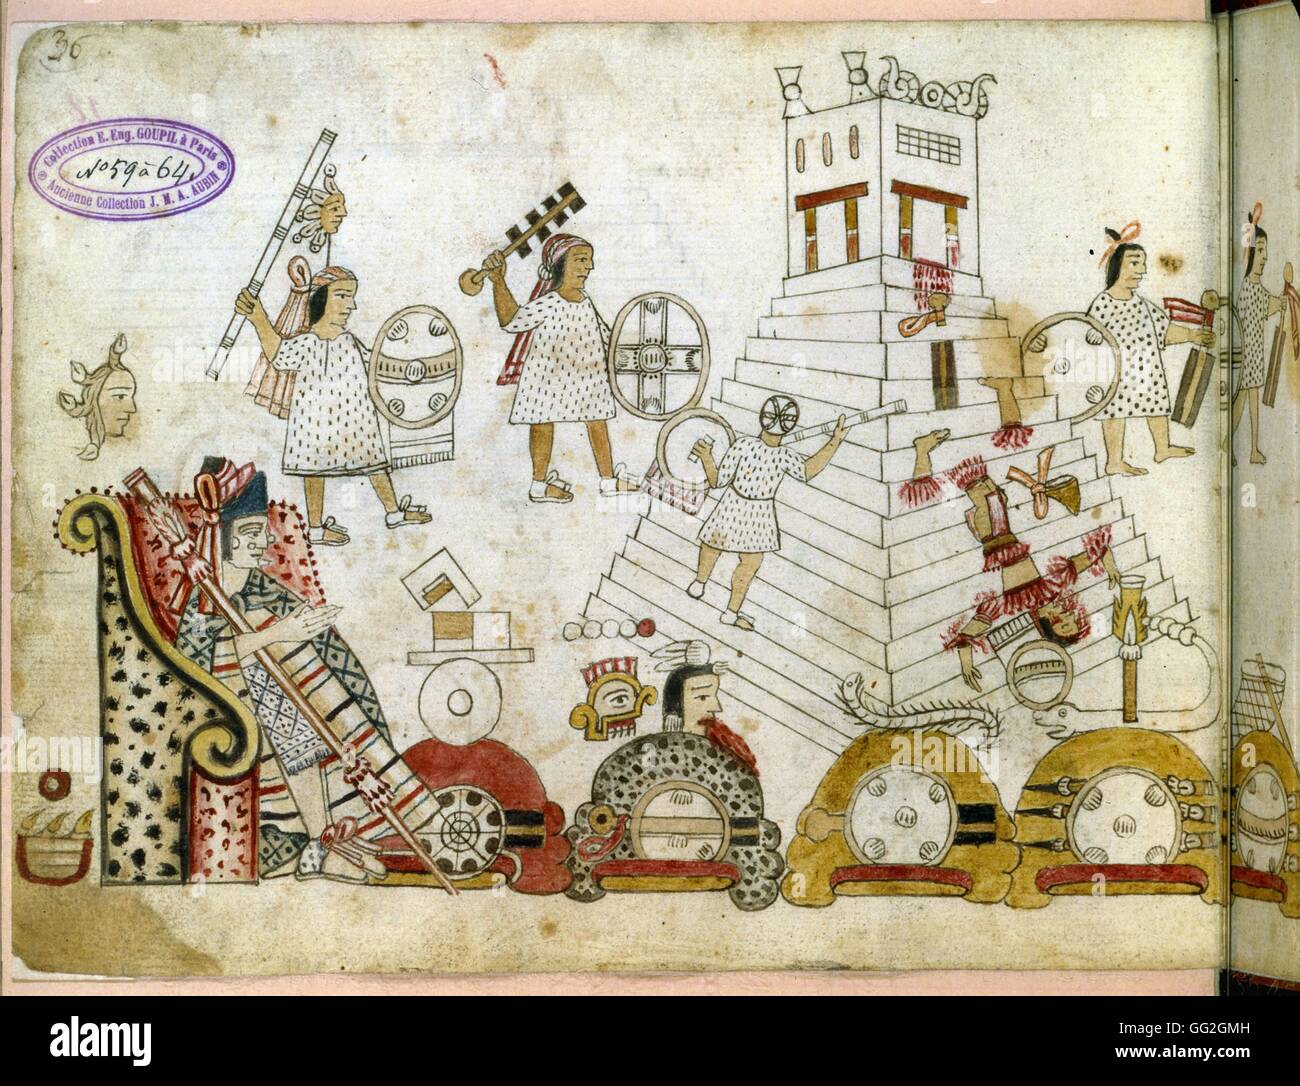 Les prisonniers de guerre à sacrifié le dieu Soleil. Manuscrit aztèque, après 1519. Paris, Bibliothèque Nationale de France Banque D'Images